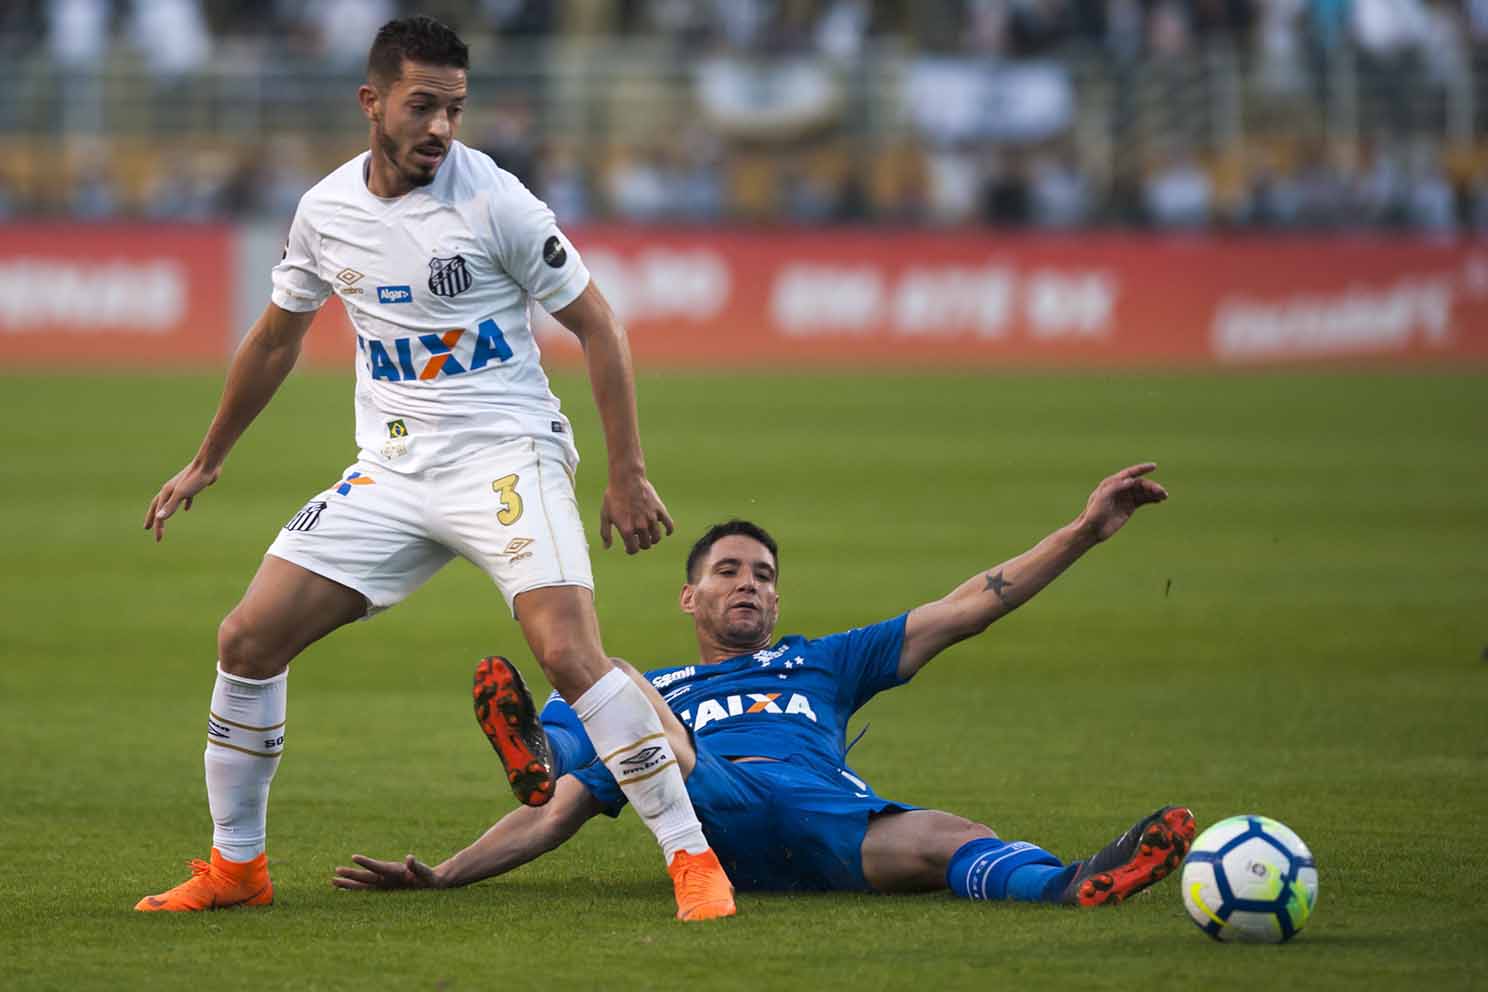 Jogo Do Santos / ZUEIRA FUTEBOL CLUBE: Reação dos corinthianos vendo o jogo ...